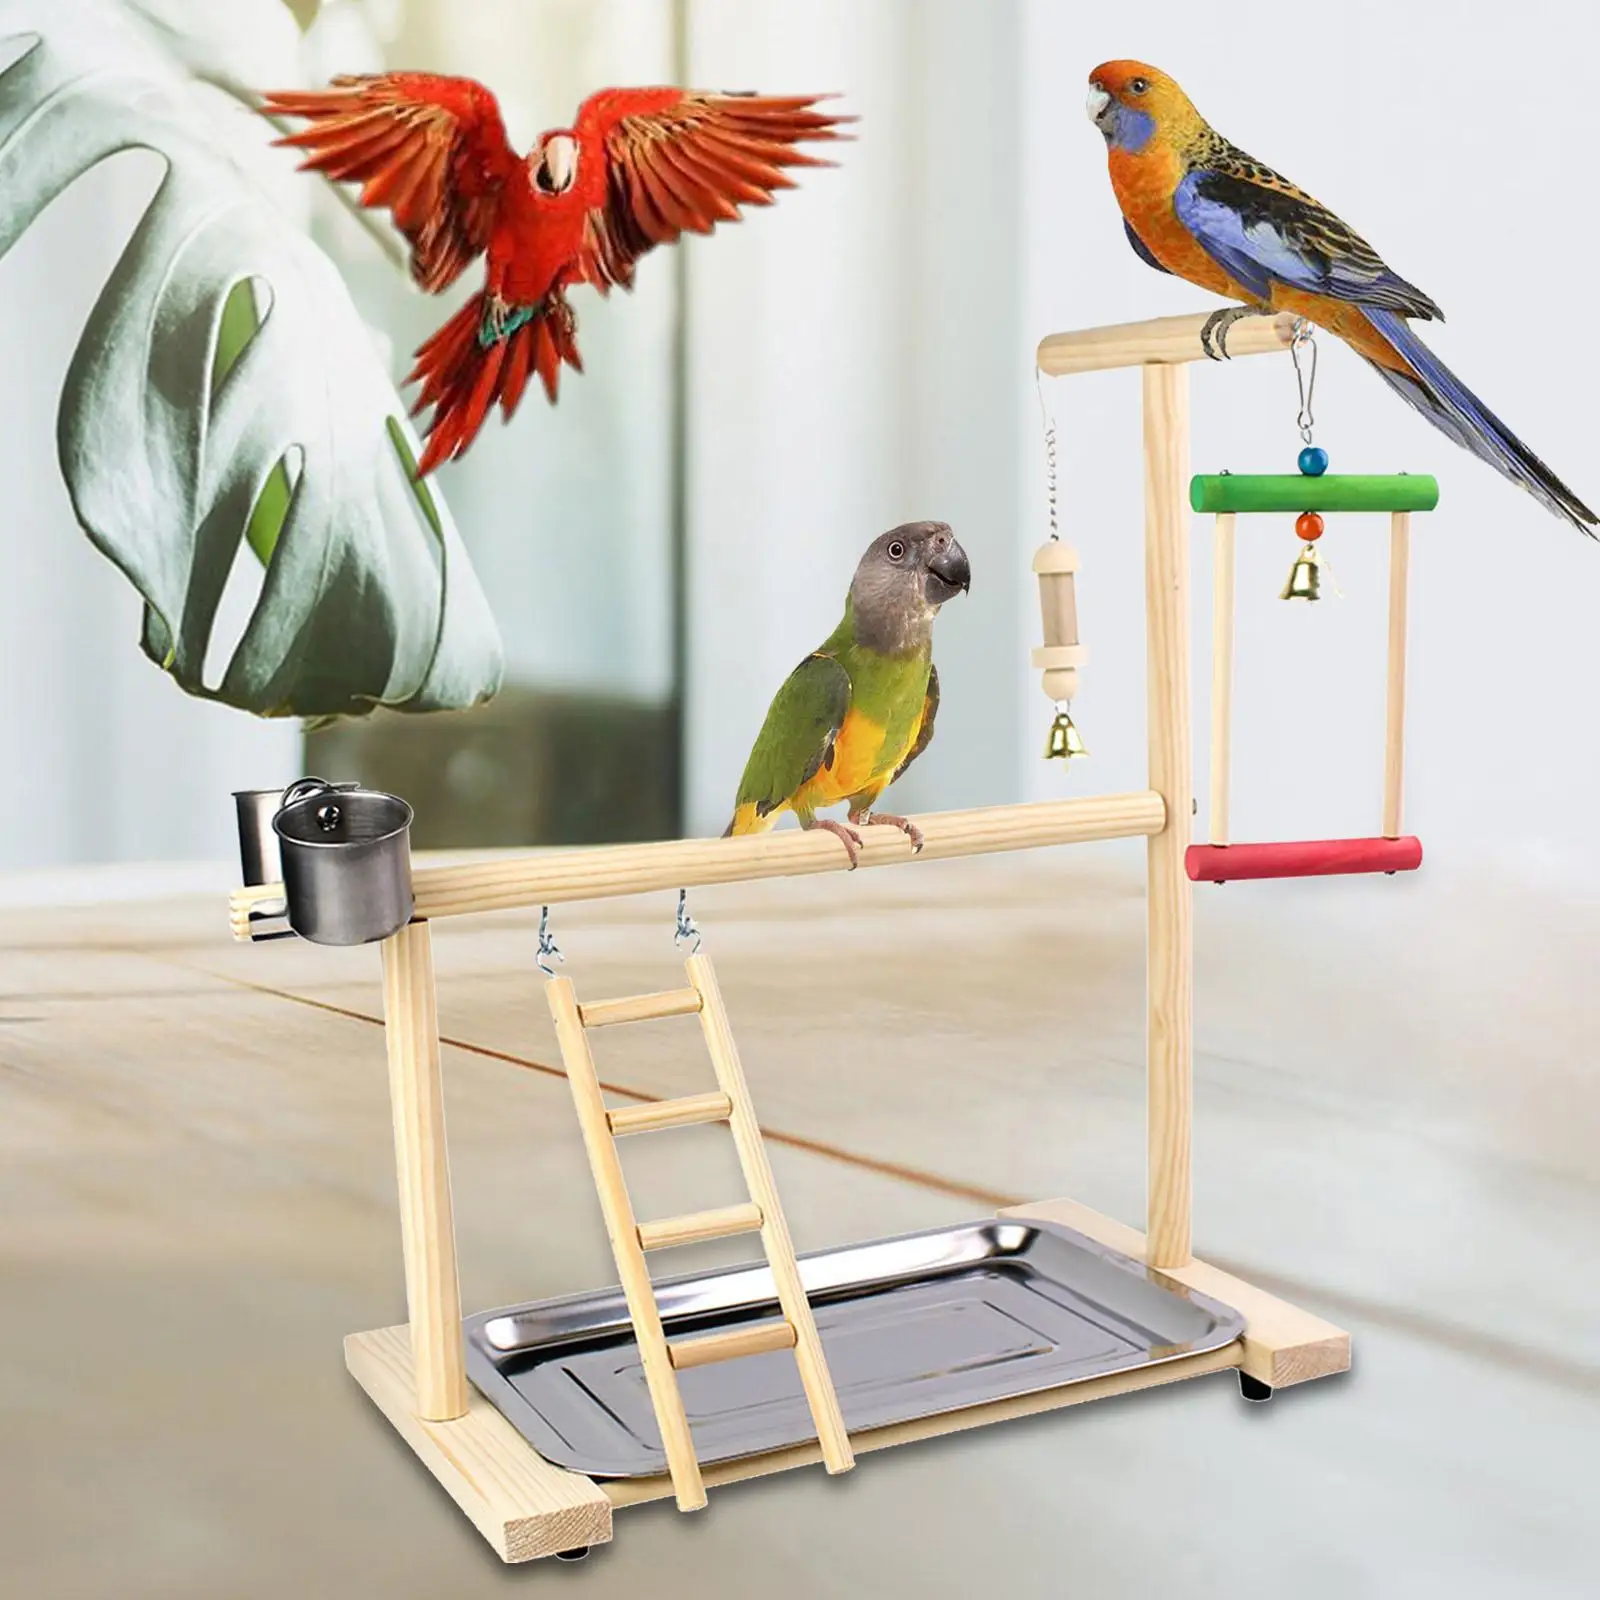 Toys Bird Perch Platform Bird Playground with Feeder Gym Ladder Playground